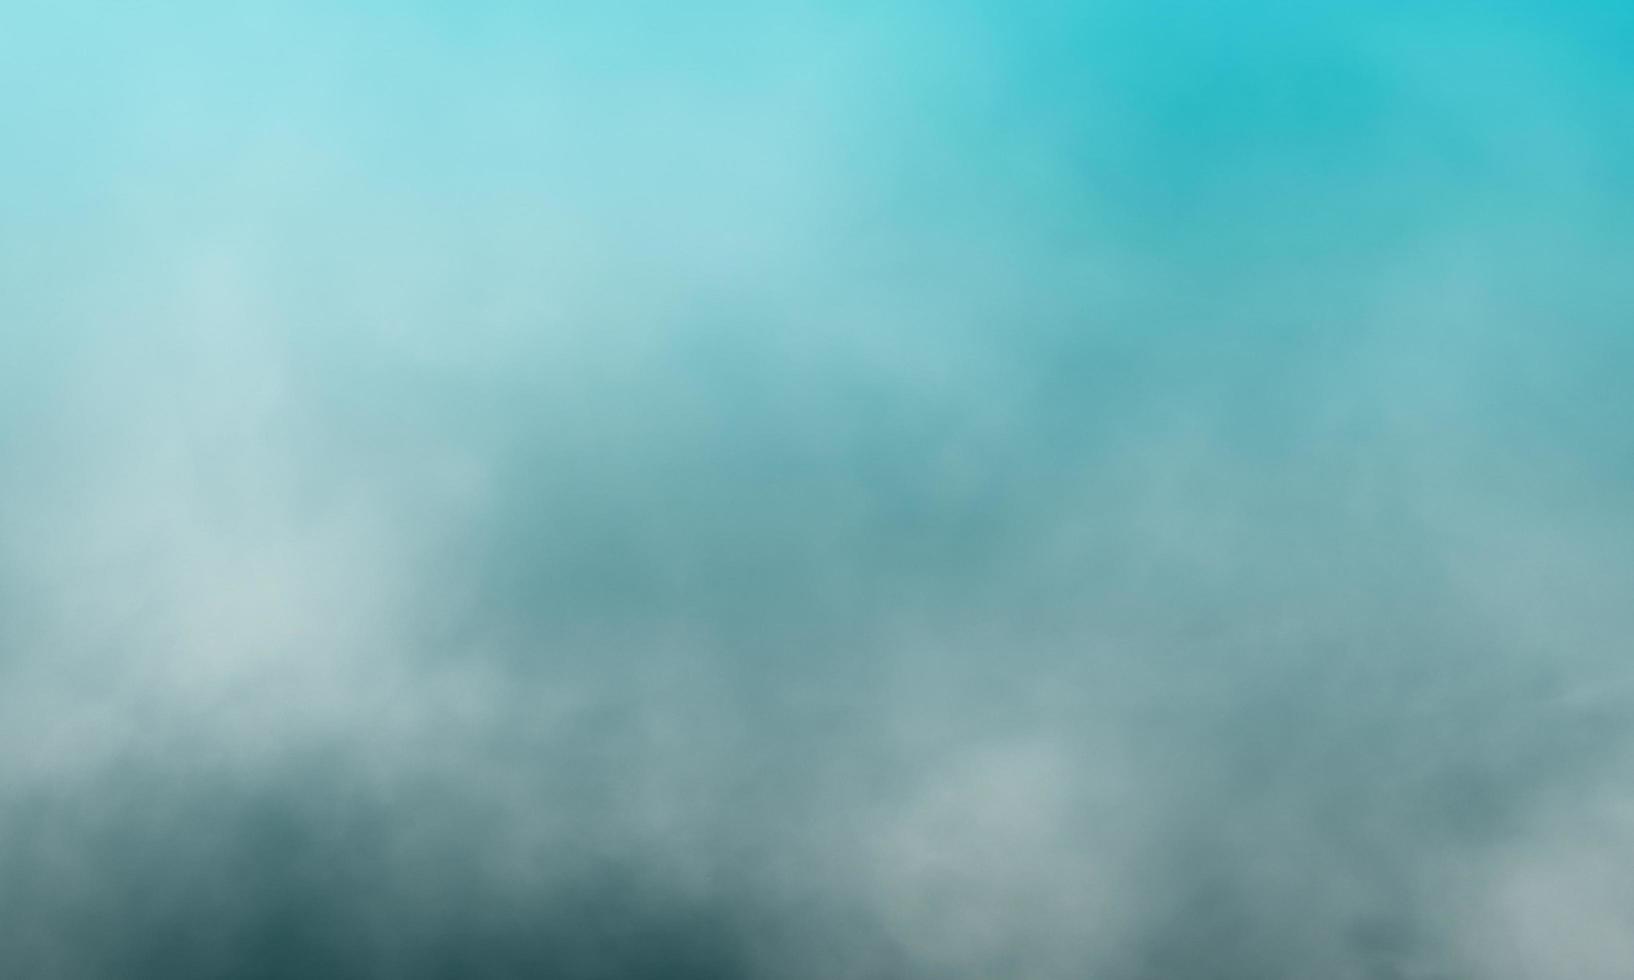 Niebla azul hielo o fondo aislado de color humo para el efecto. foto